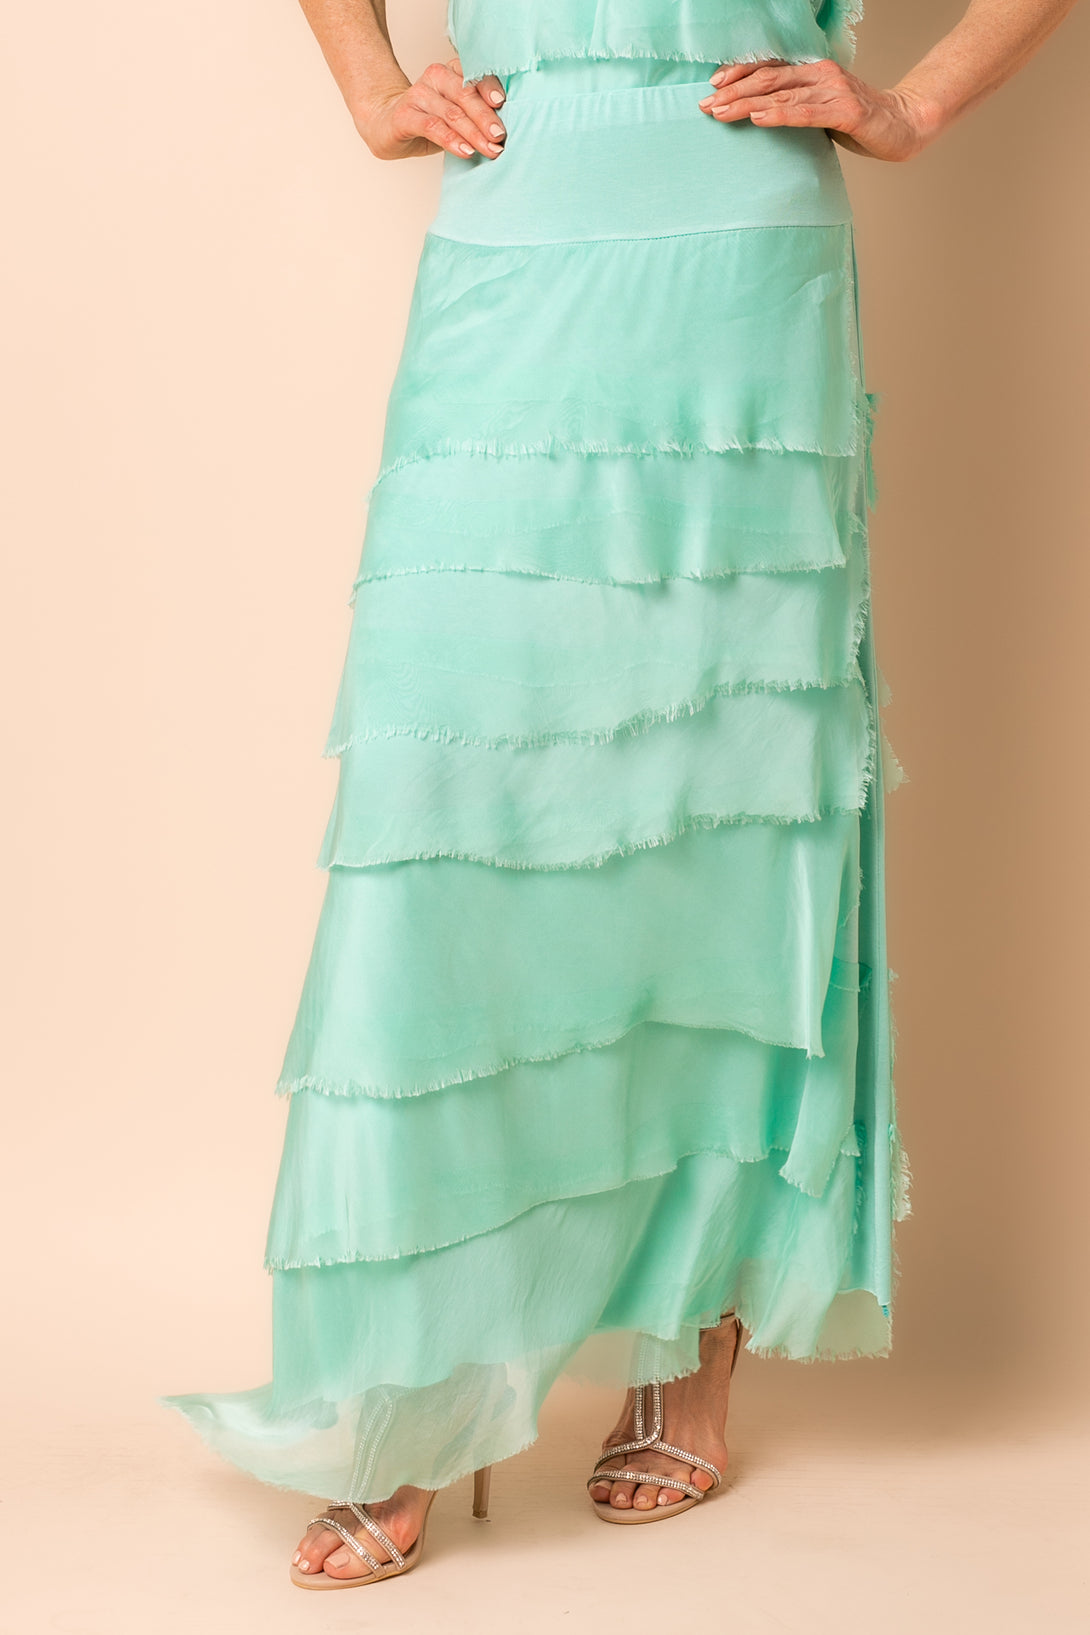 Fifi Silk Skirt in Sea Green - Imagine Fashion